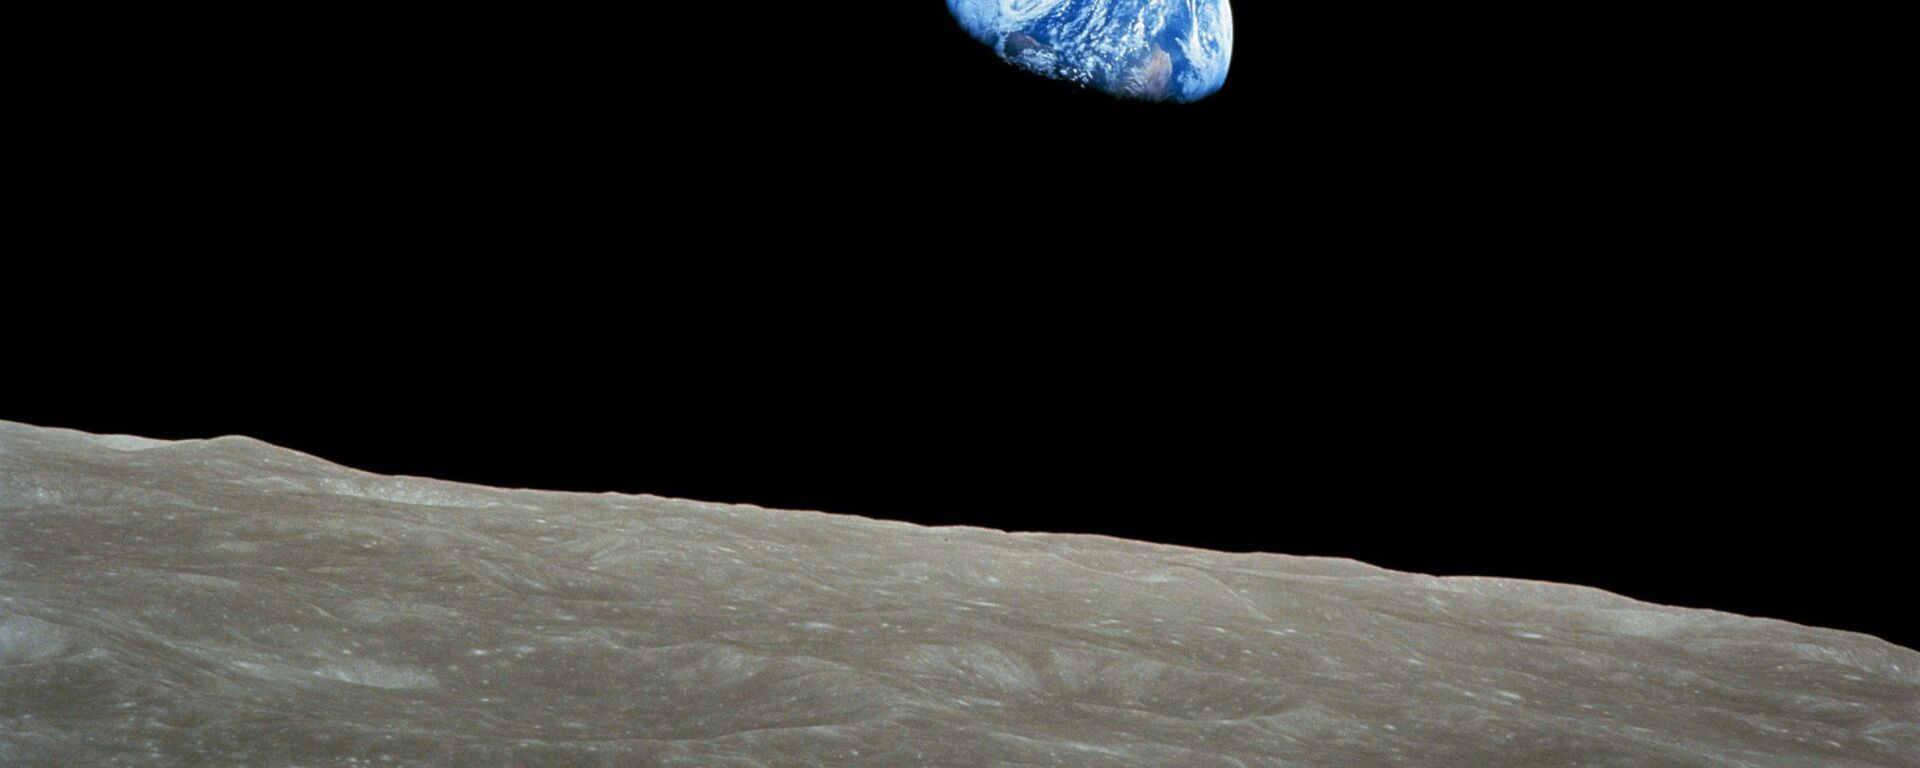 Вид на Землю с поверхности Луны, архивное фото - Sputnik Lietuva, 1920, 07.08.2020